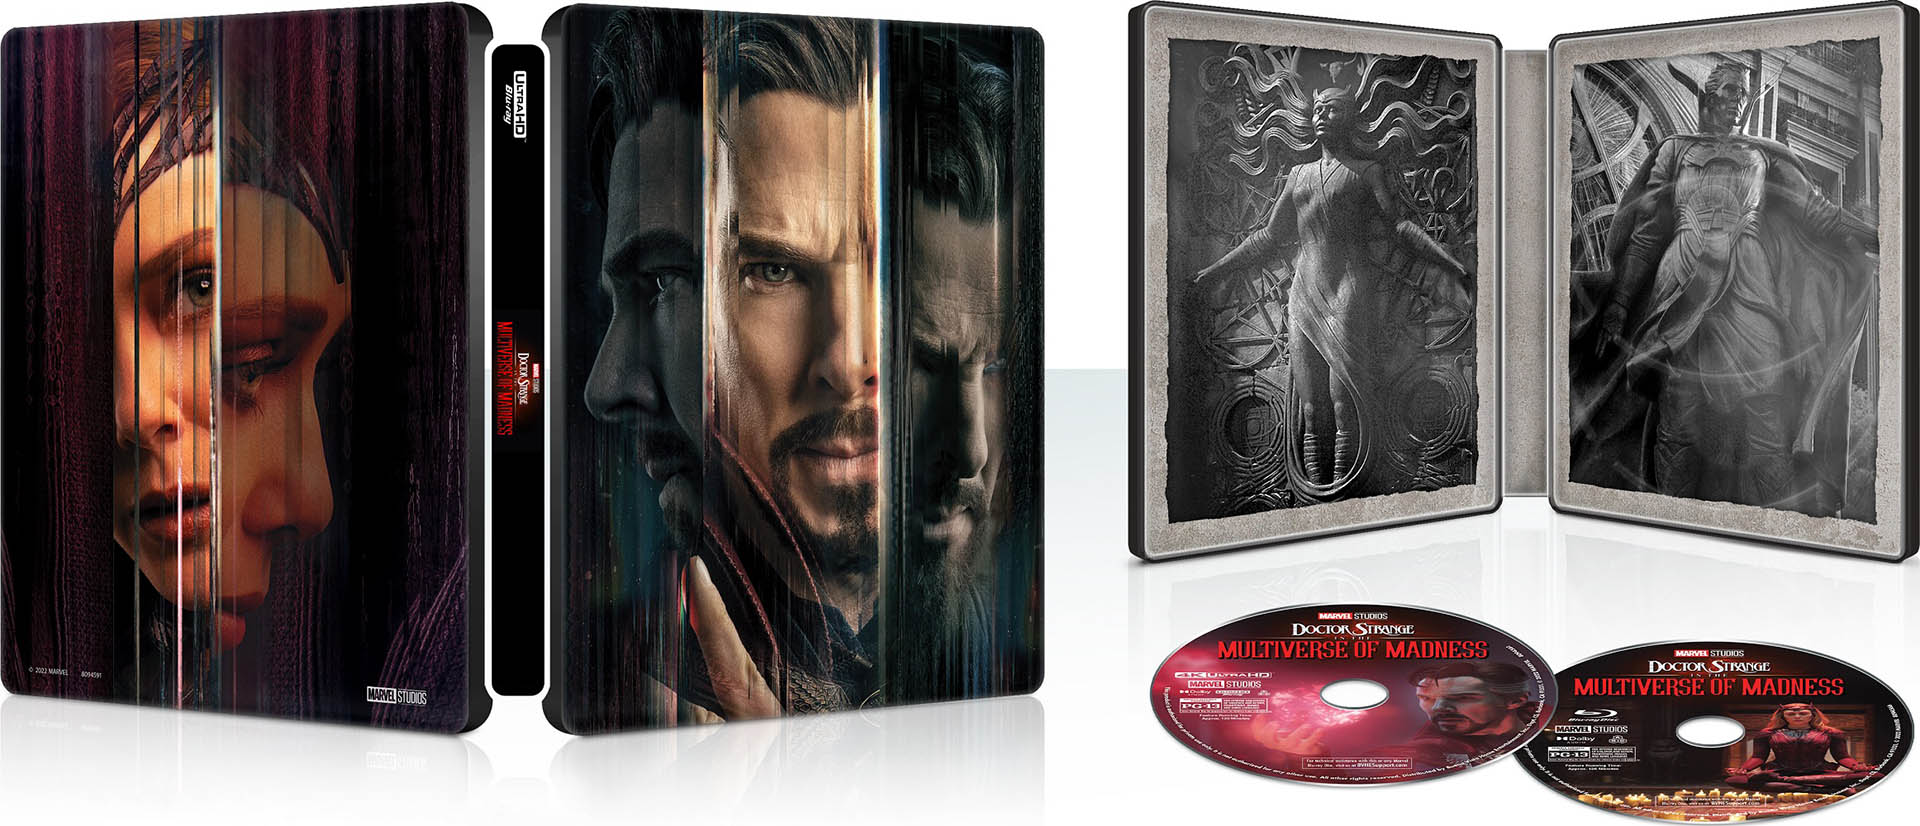 Doctor Strange in the Multiverse of Madness 4k Blu-ray Best Buy SteelBook open